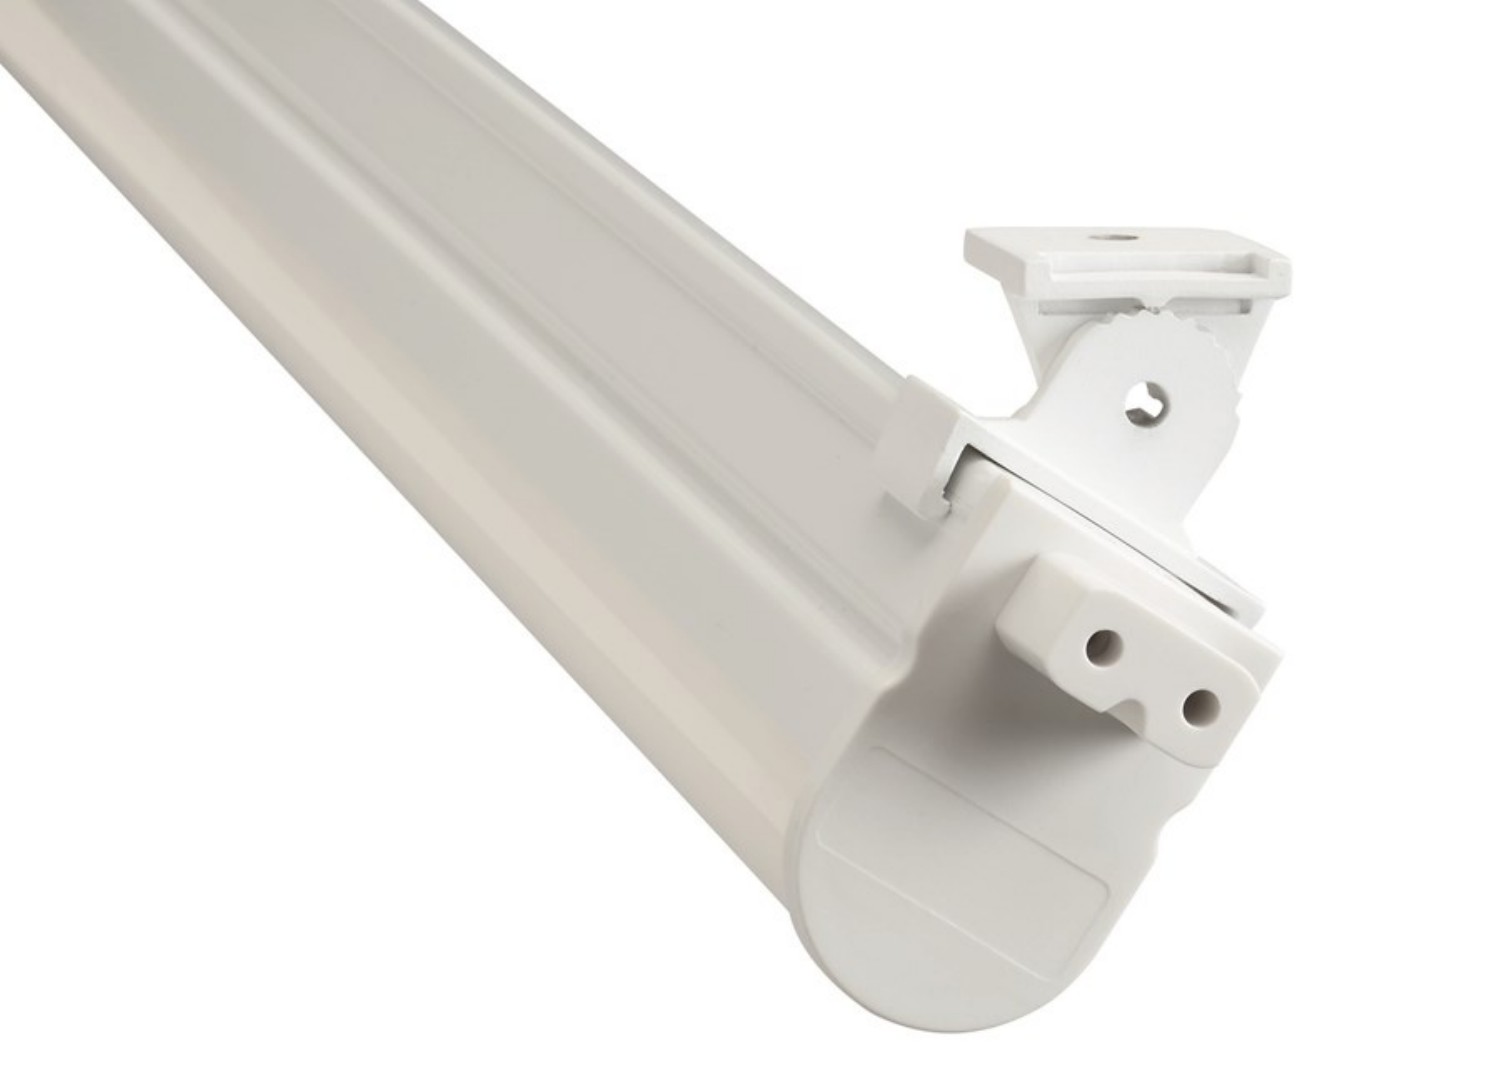 Sylvania LED Lichtleiste Pipe 4 Watt 840 neutralweiß 300mm mit Anschlußleitung und Befestigungsclips starr und beweglich 